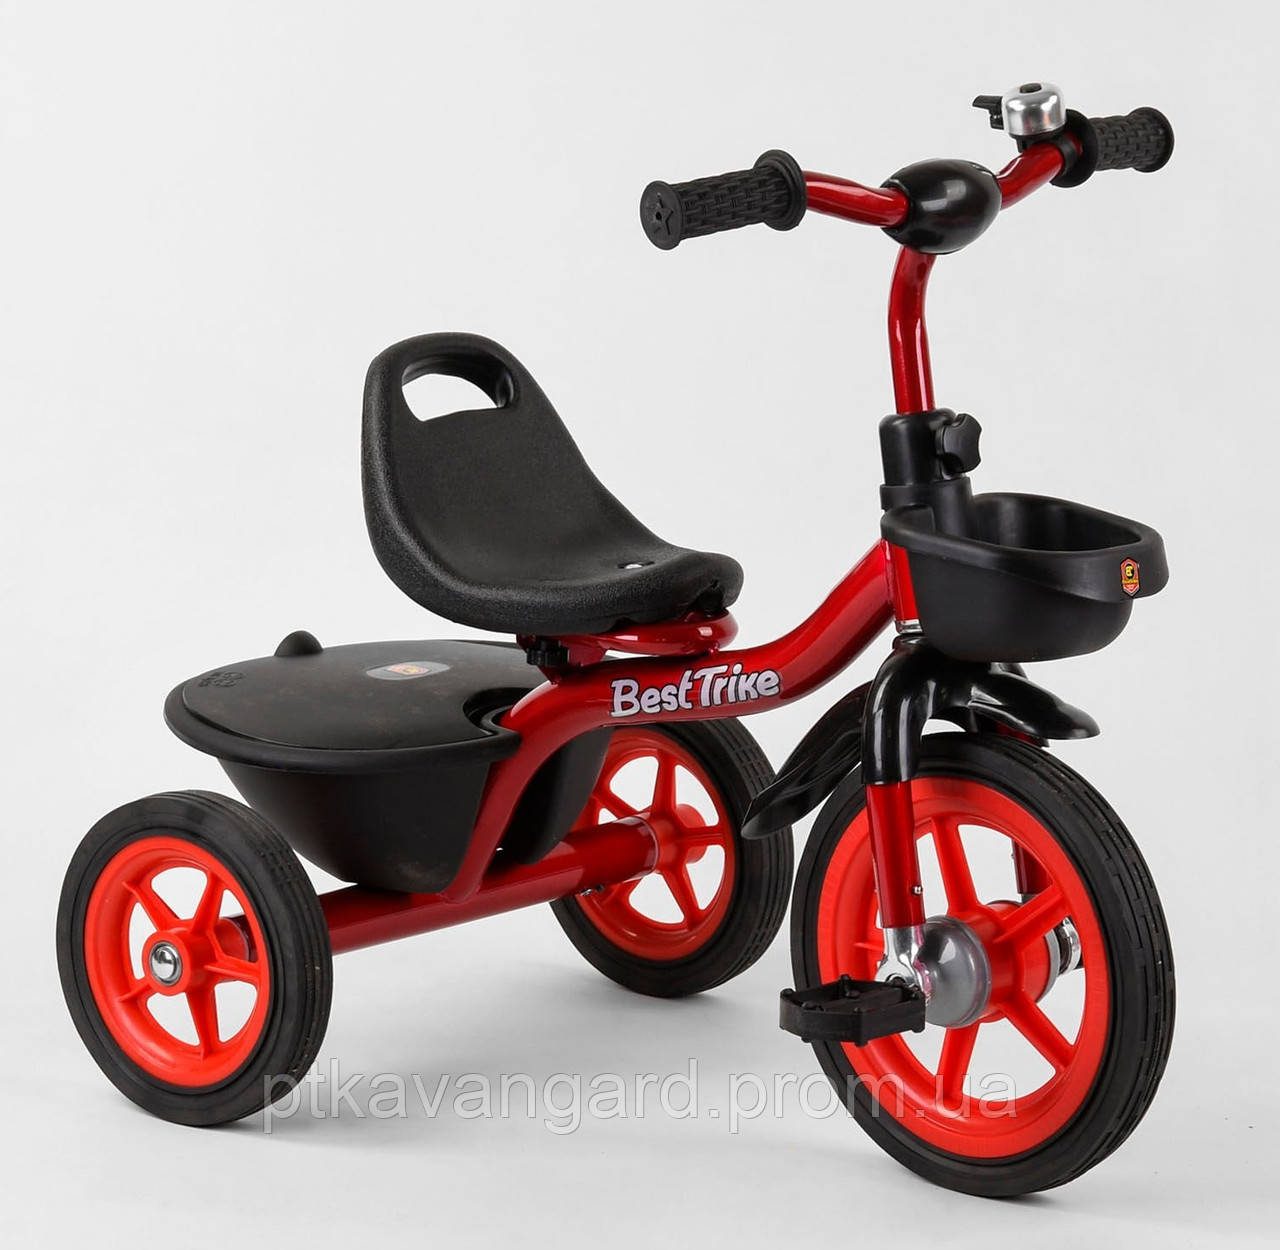 Дитячий триколісний Велосипед для дітей Червоний Best Trike BS-1788 гумові колеса, 2 корзини, дзвіночок